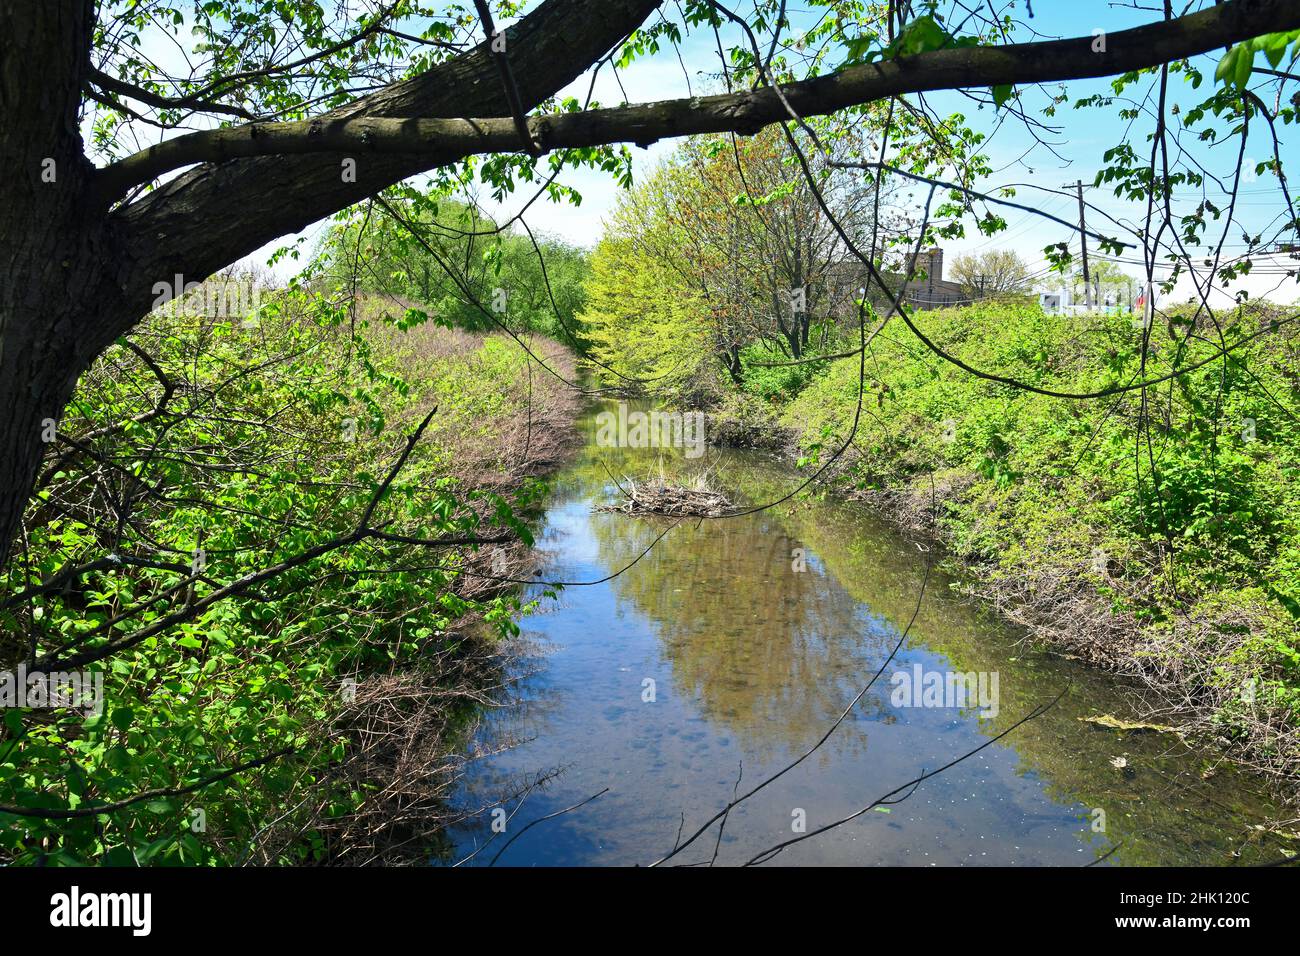 Bel torrente, piccolo fiume che scorre, con riflessi, alberi, cielo blu e parte di uno spartiacque, estuario. Foto Stock